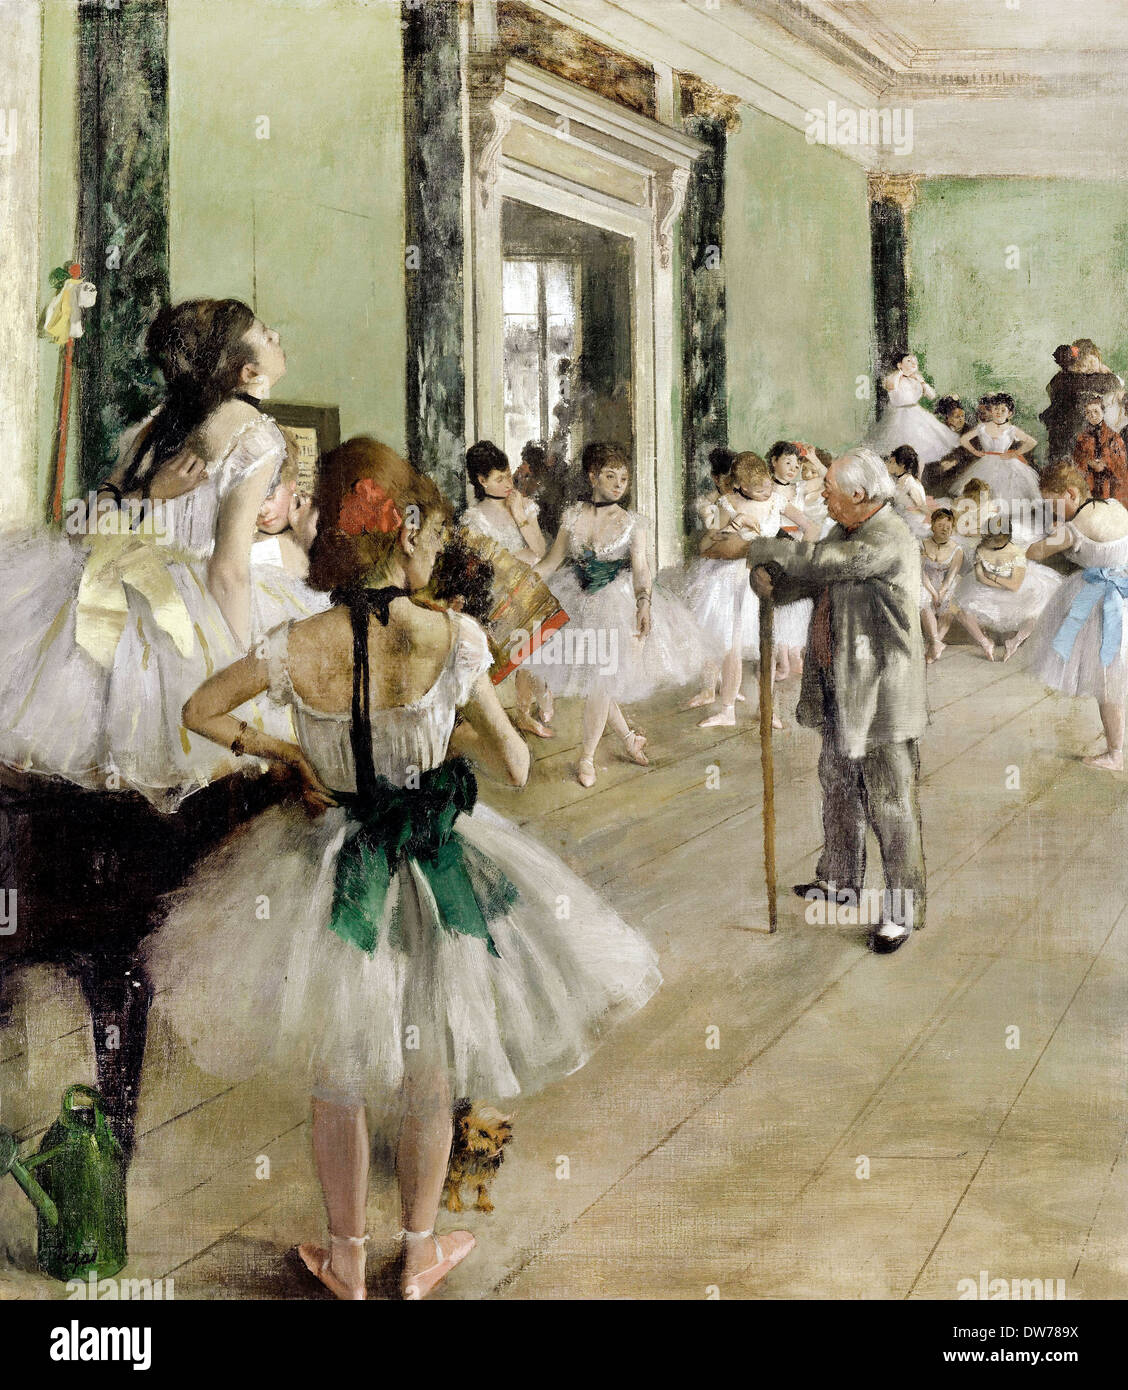 Edgar Degas, La clase de ballet 1871-1874 Óleo sobre lienzo. Musee d'Orsay, París, Francia. Foto de stock